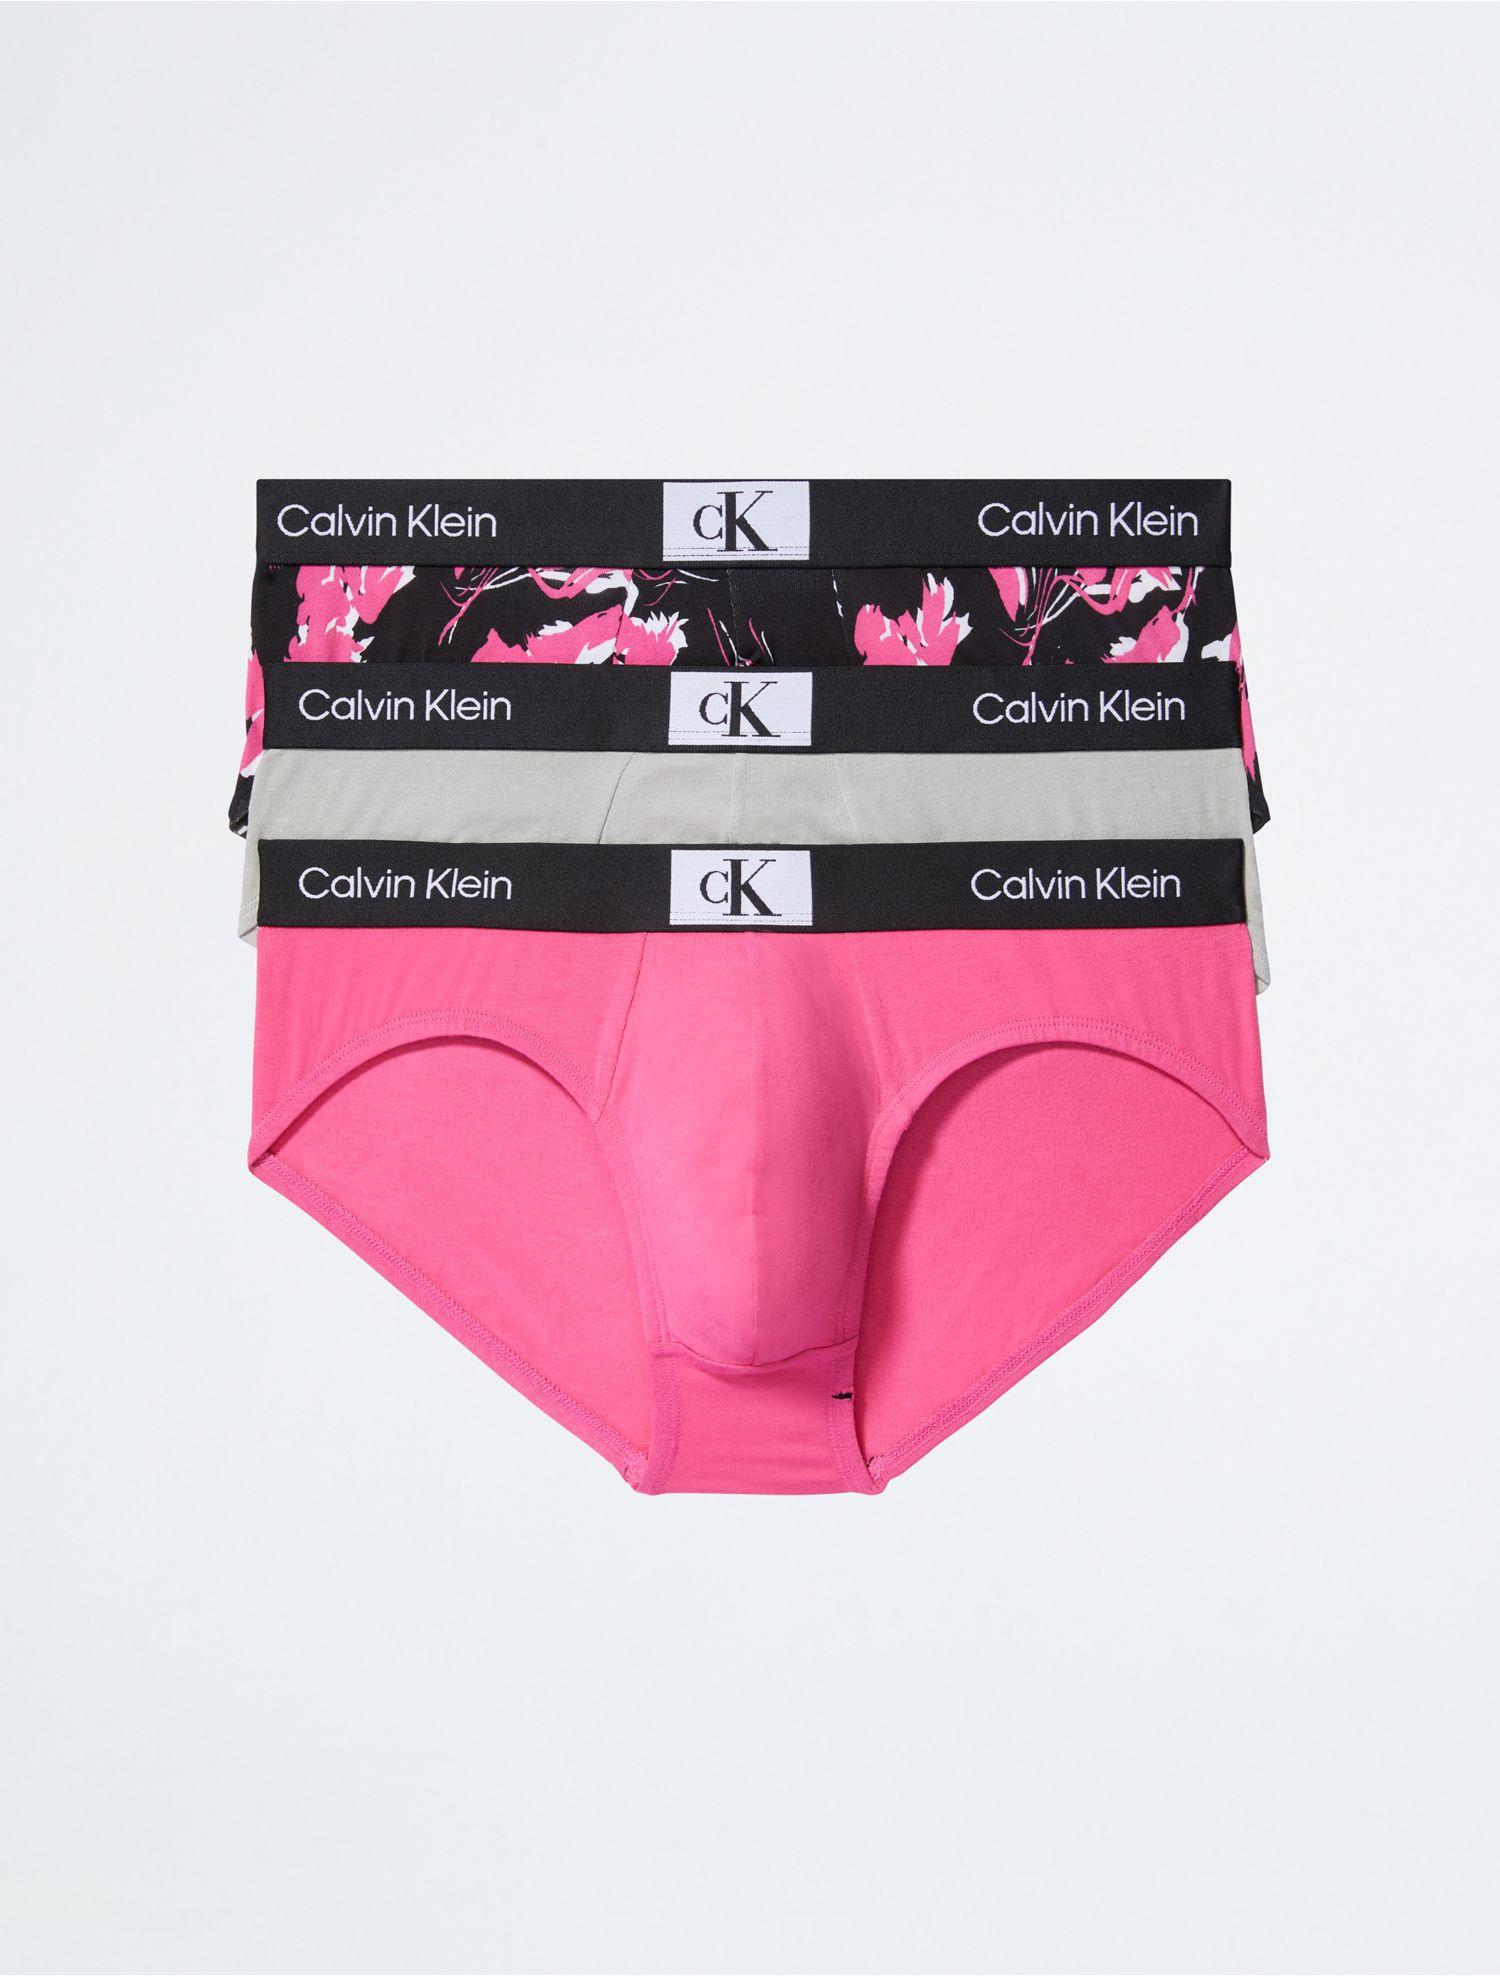 Calvin Klein 1996 3-pack Cotton Stretch Hip Brief in Pink for Men